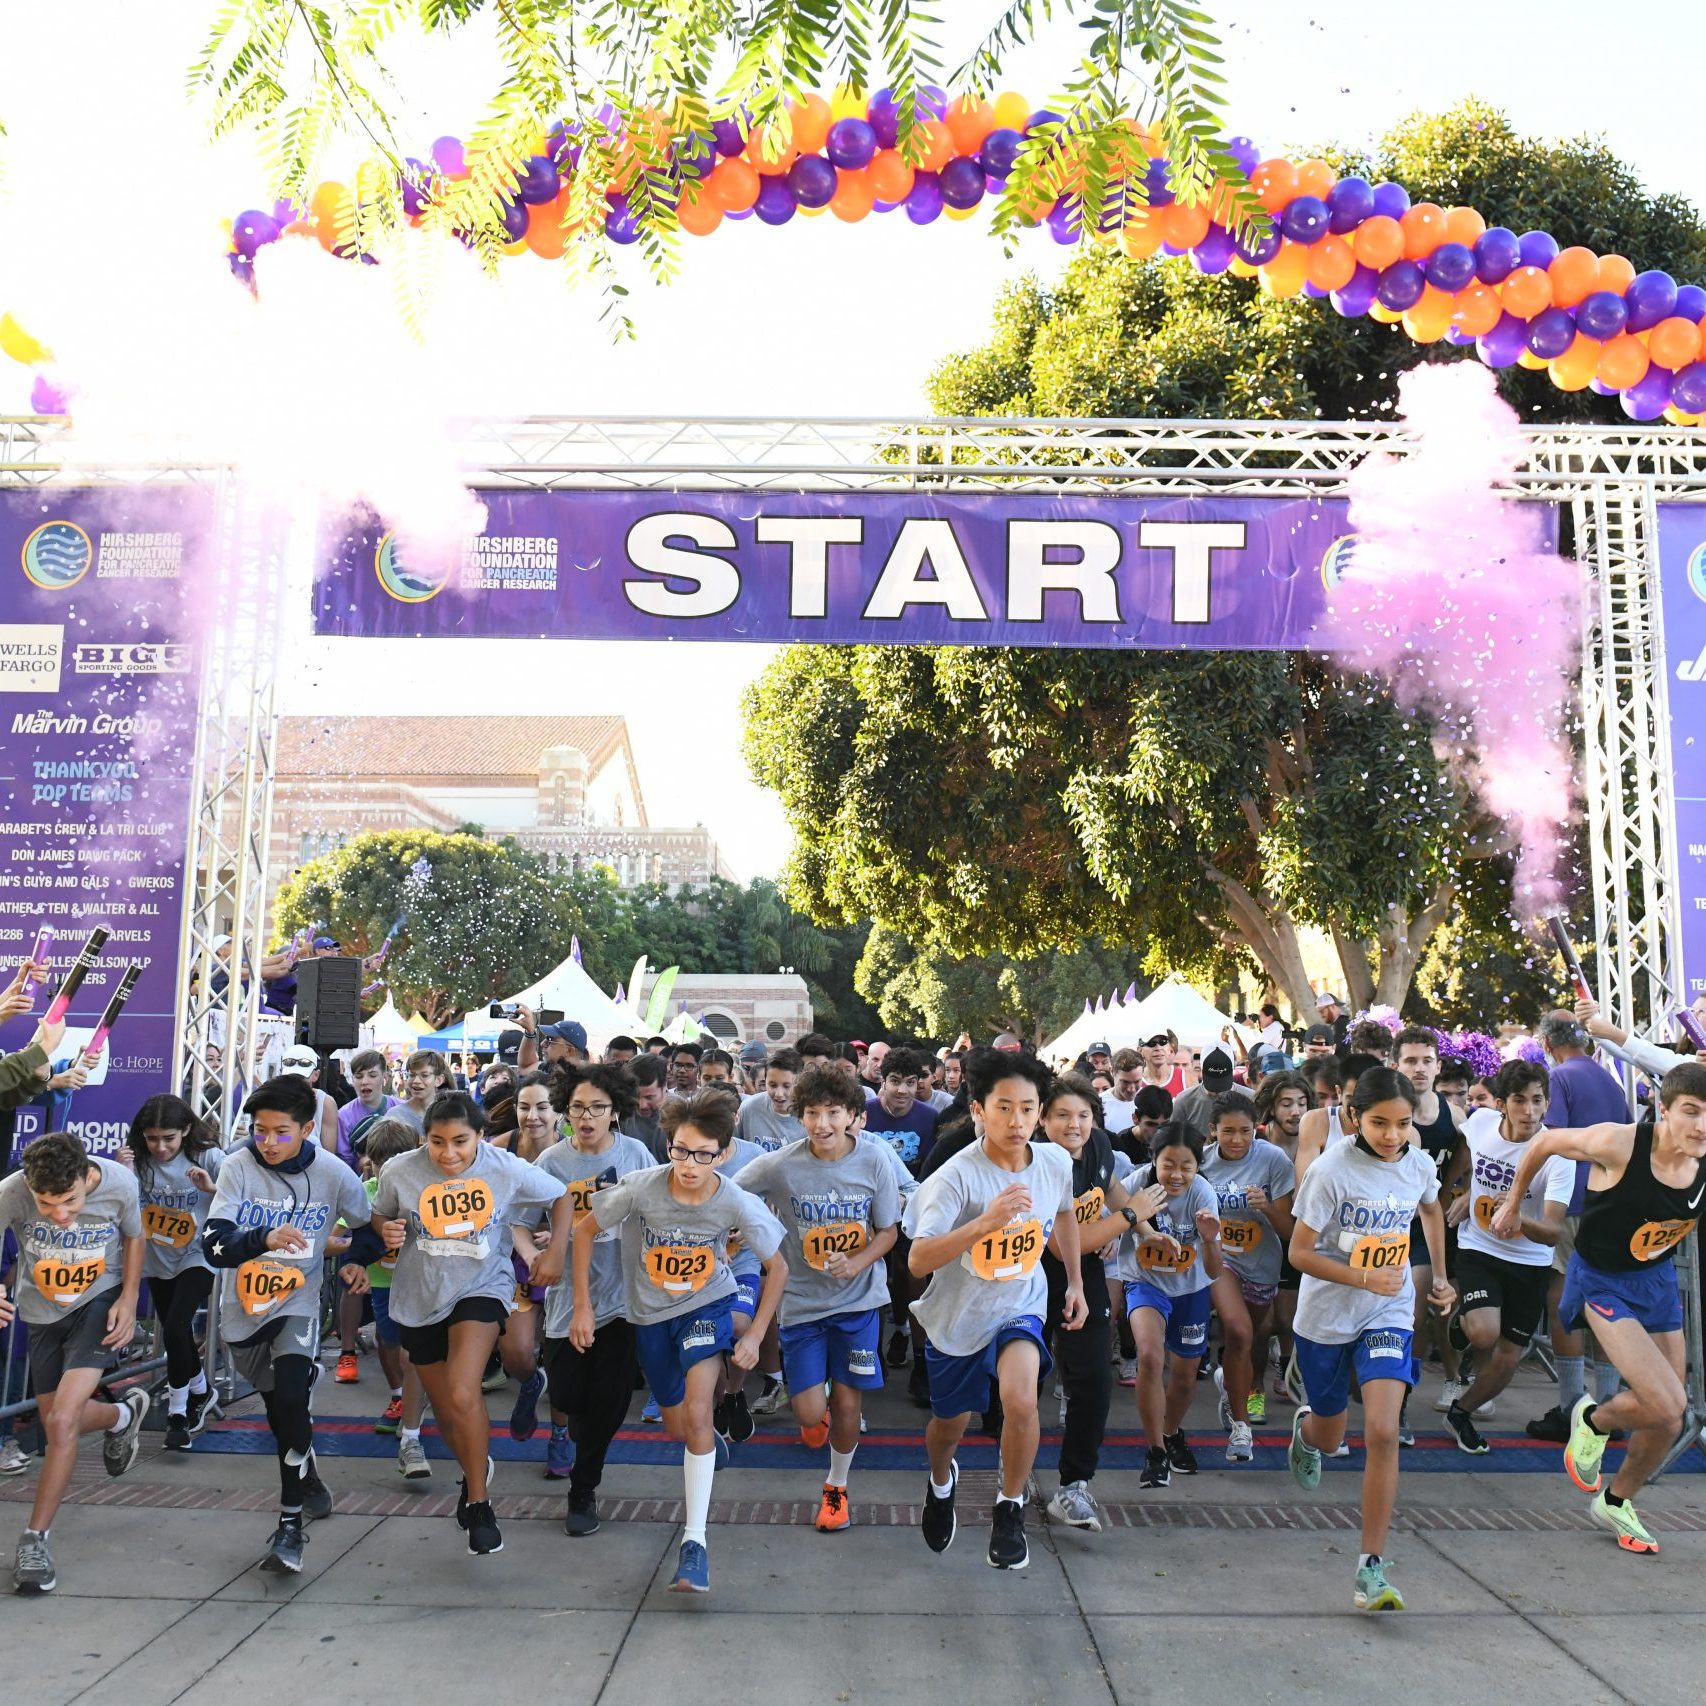 26th Annual L.A. Cancer Challenge 5K Walk/Run